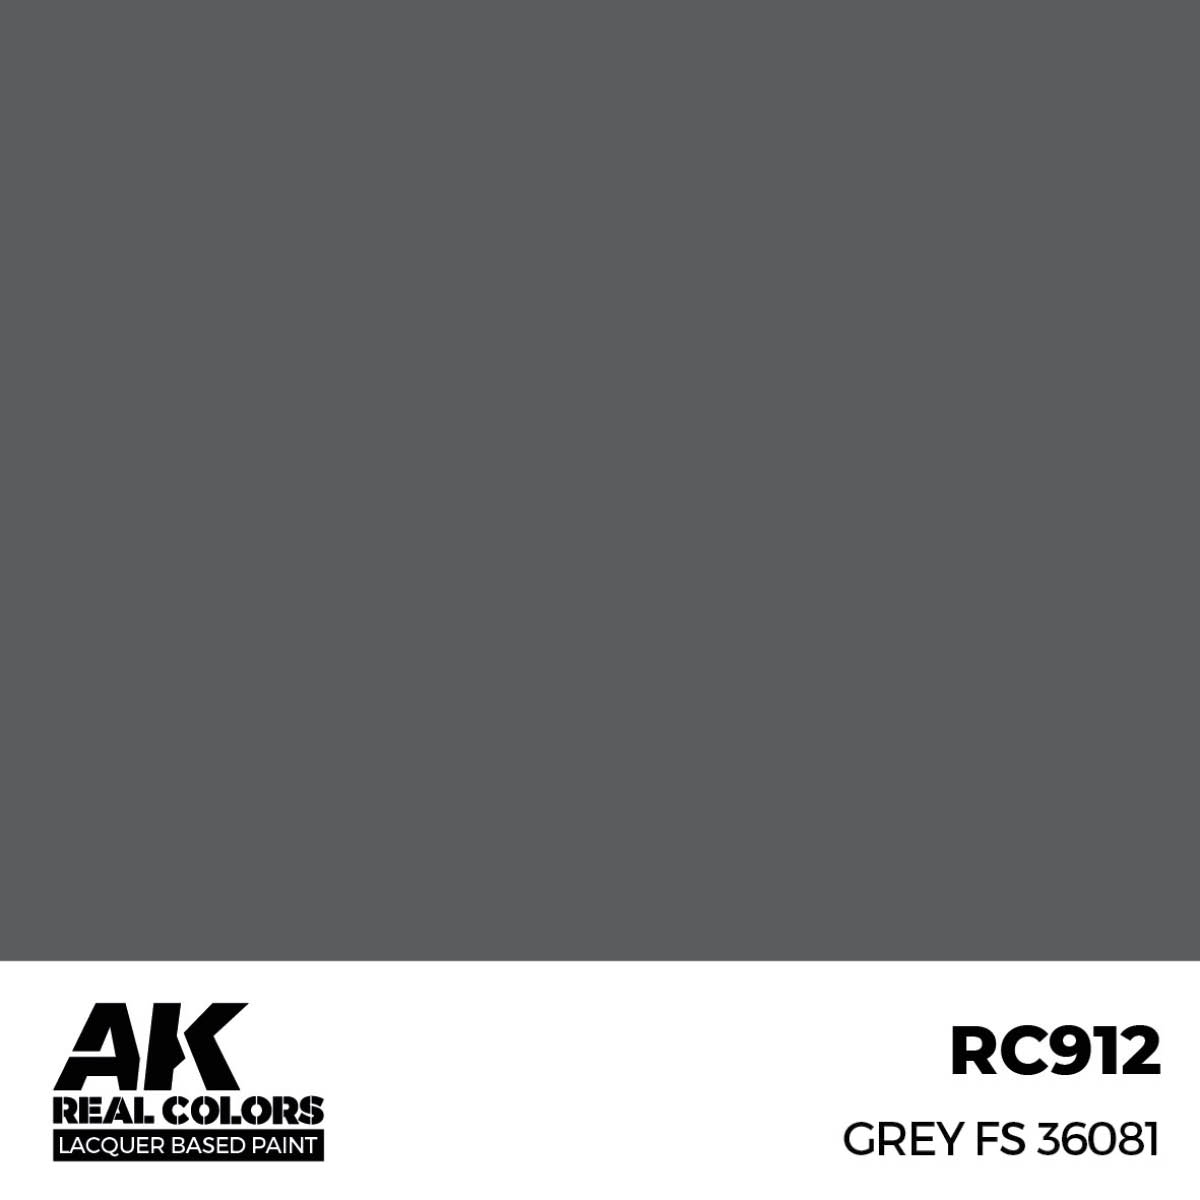 Grey FS 36081